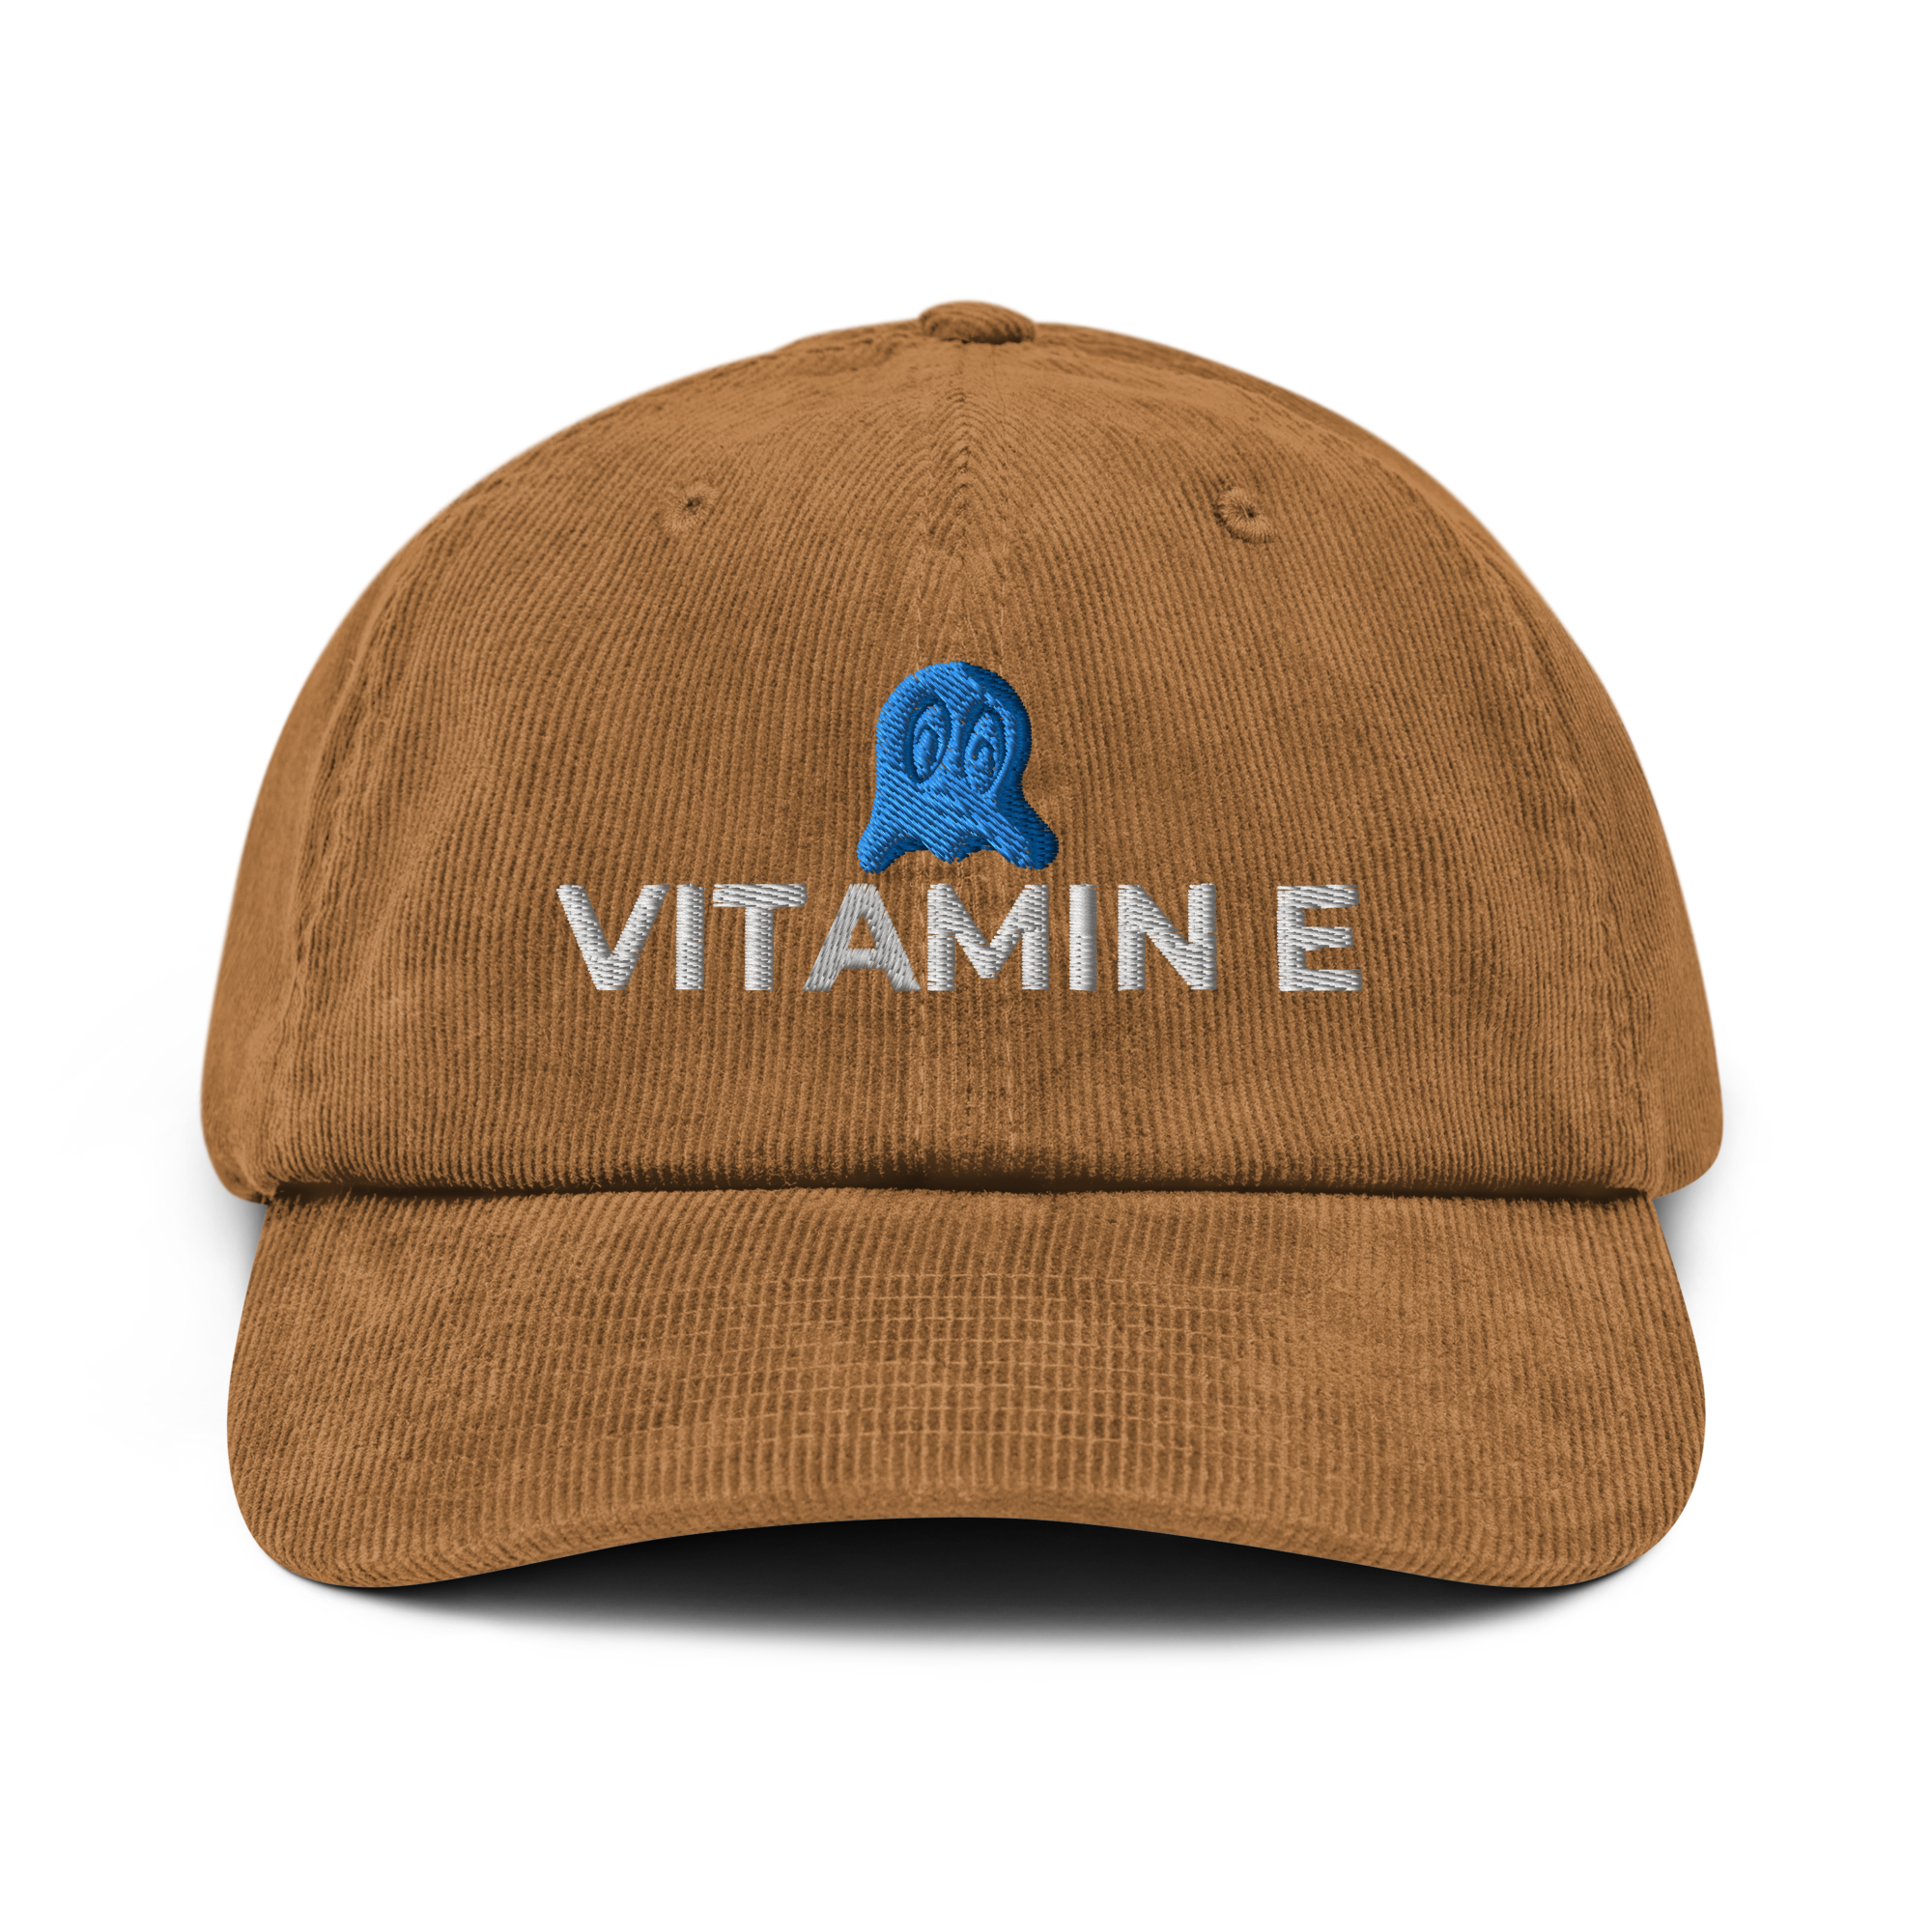 The Vitamin E Hat